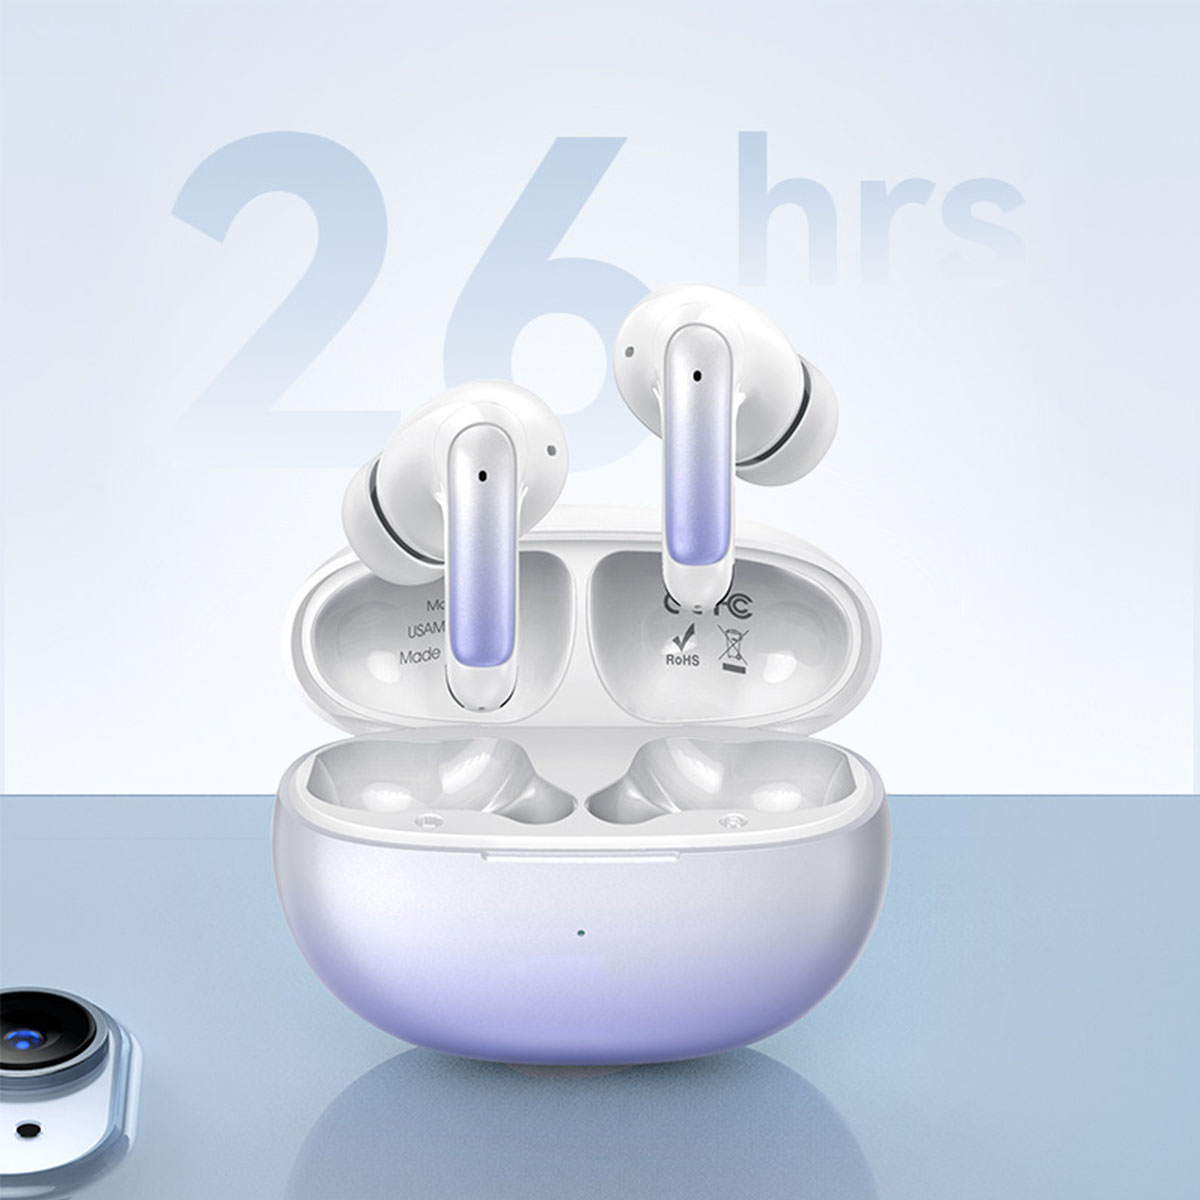 BRIGHTAKE Ultimative mehr!, Gaming Bluetooth-Kopfhörer Bluetooth Sport-Ohrhörer: und Farbverlauf Noise-Canceling, blau In-ear Wasserdicht